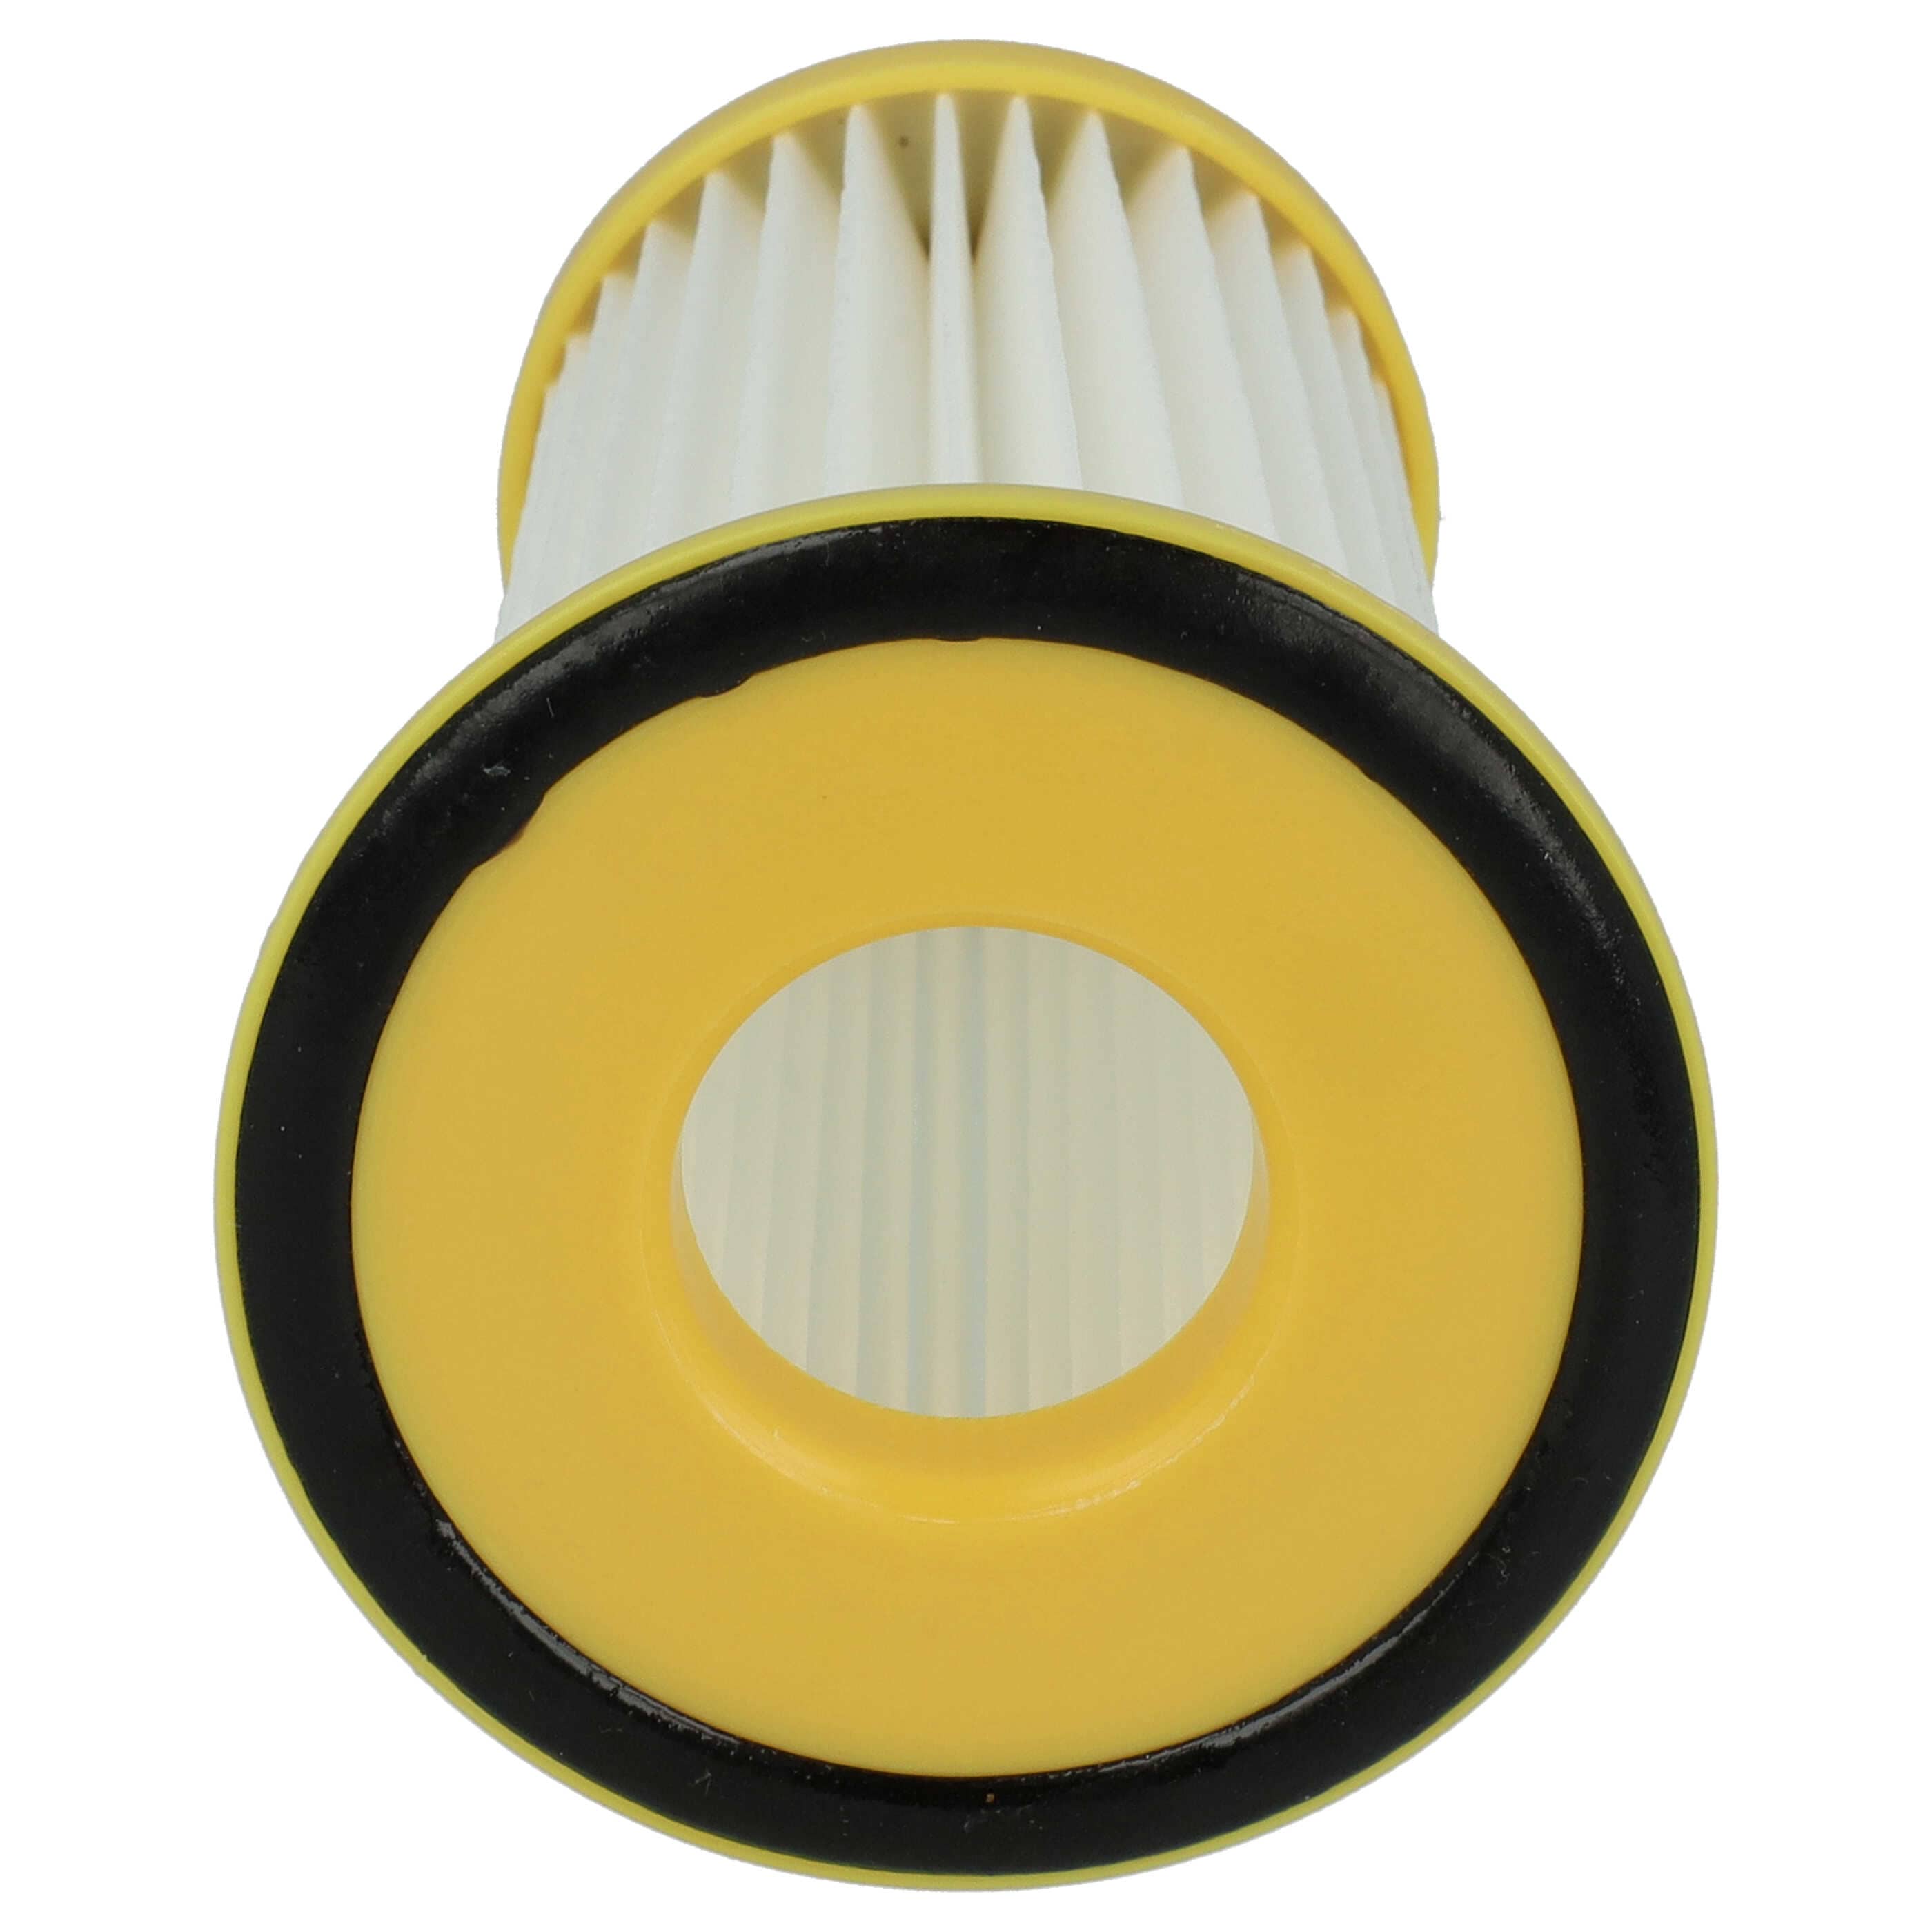 Filtro sostituisce Philips 432200520850 per aspirapolvere - filtro cartucce, bianco / giallo